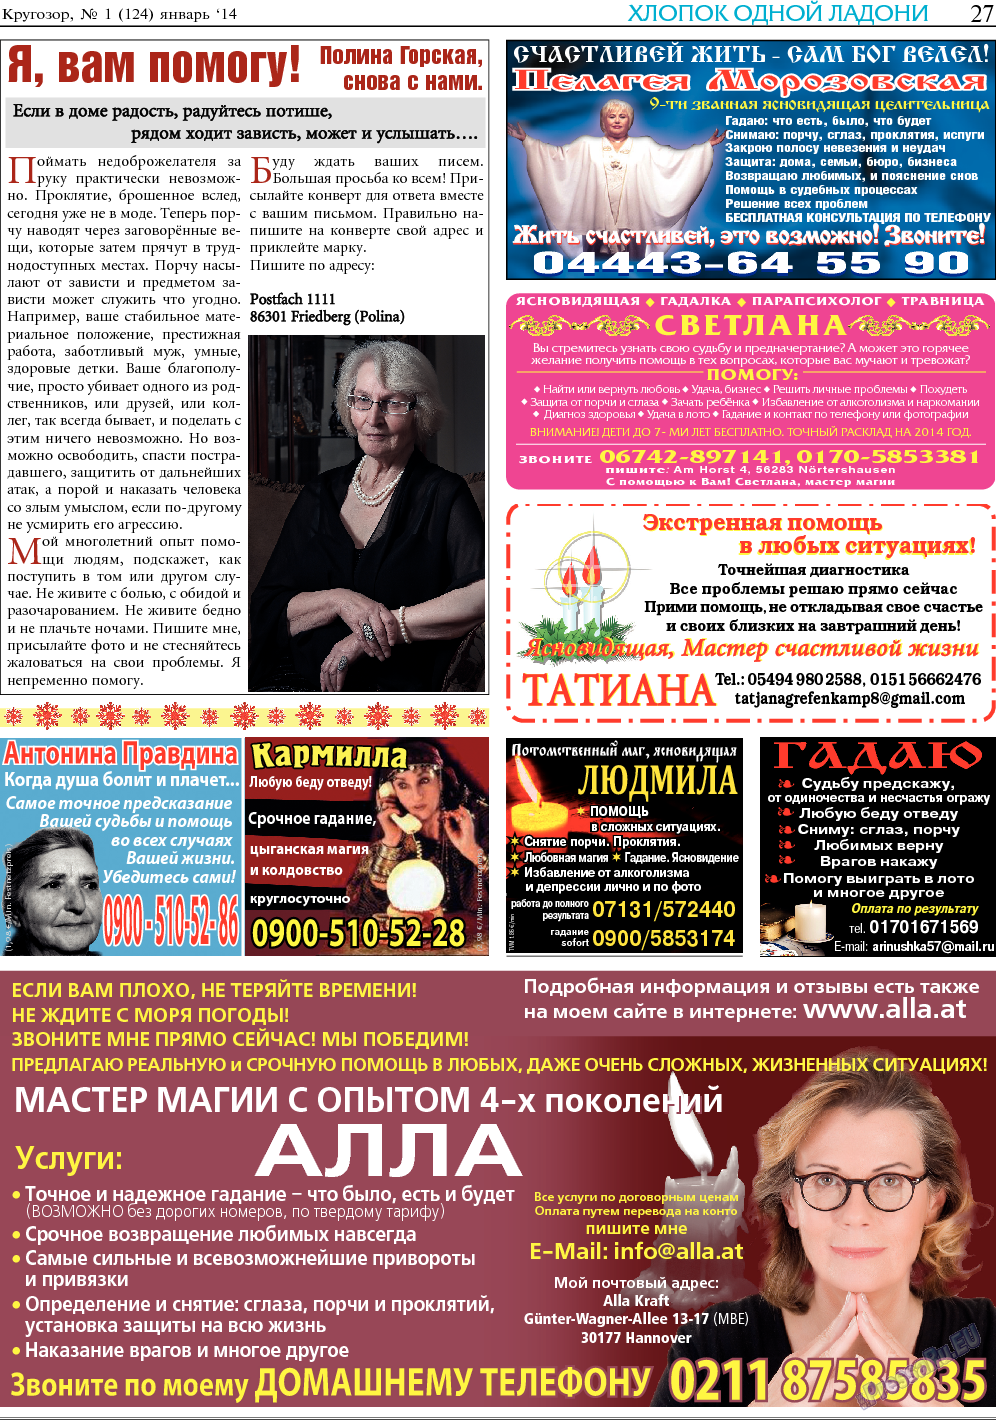 Кругозор, газета. 2014 №1 стр.27